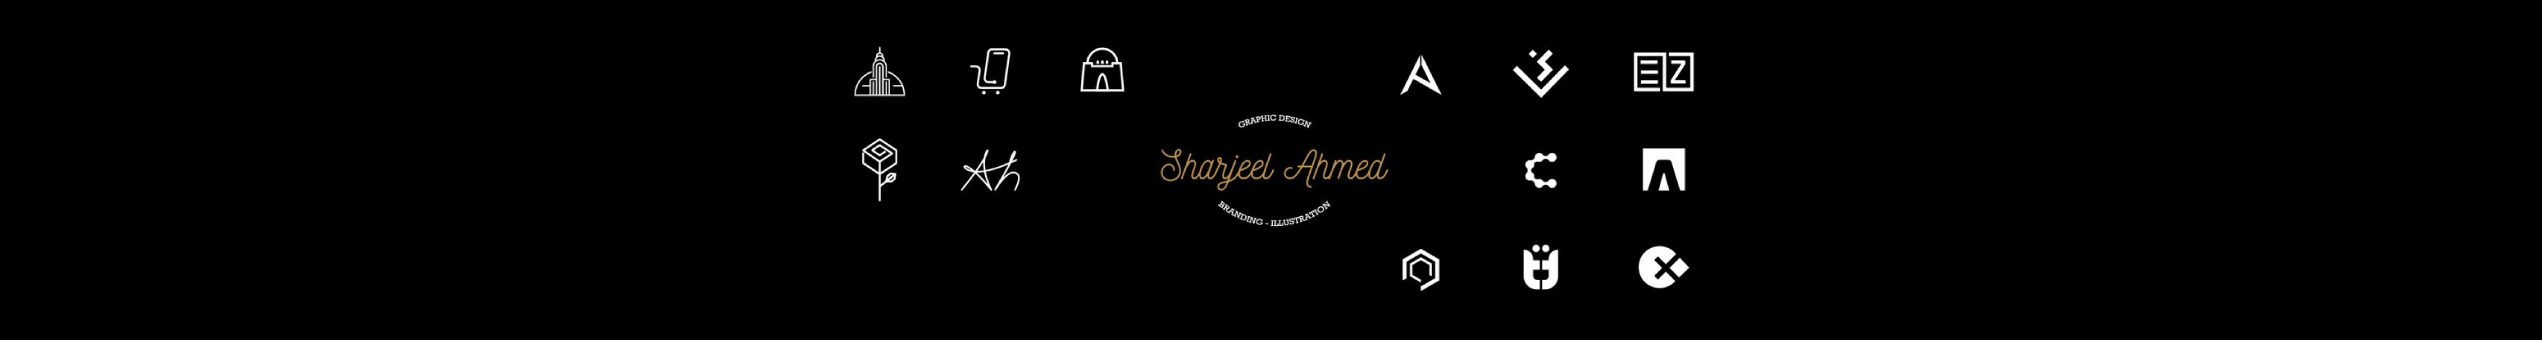 Sharjeel Ahmed 的个人资料横幅